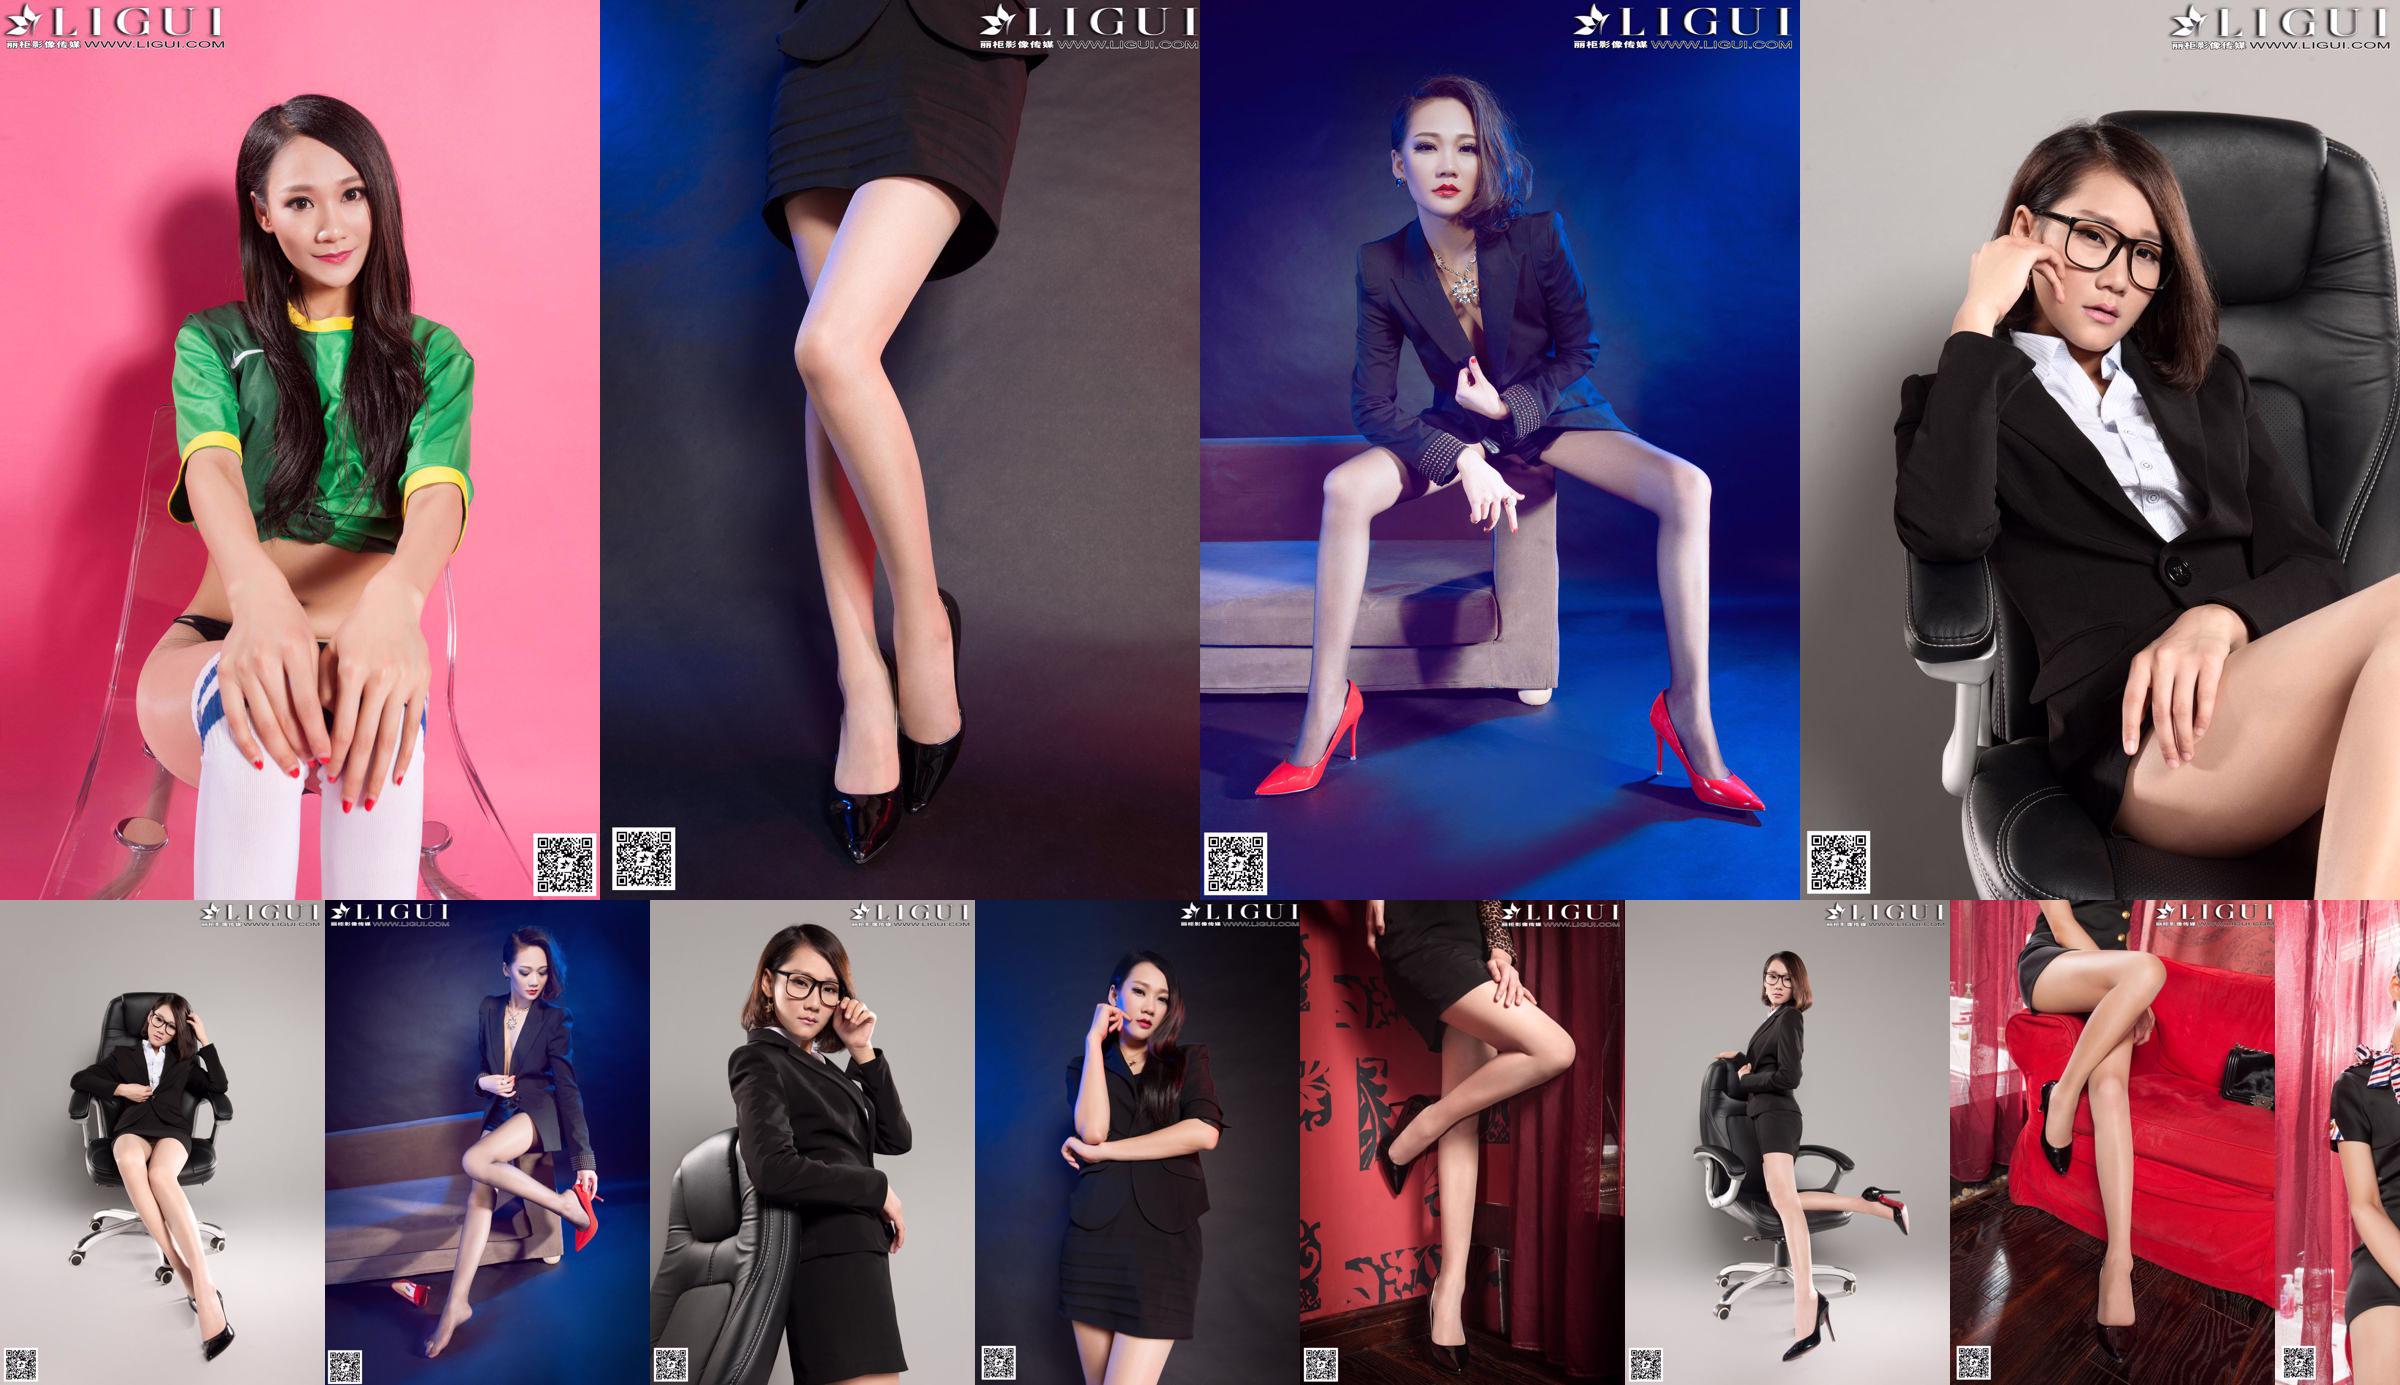 [丽 柜 LiGui] Model Mandy's "Workplace Beauty Silky Foot" Complete werken van mooie benen en Jade Foot-foto's No.b74c21 Pagina 1